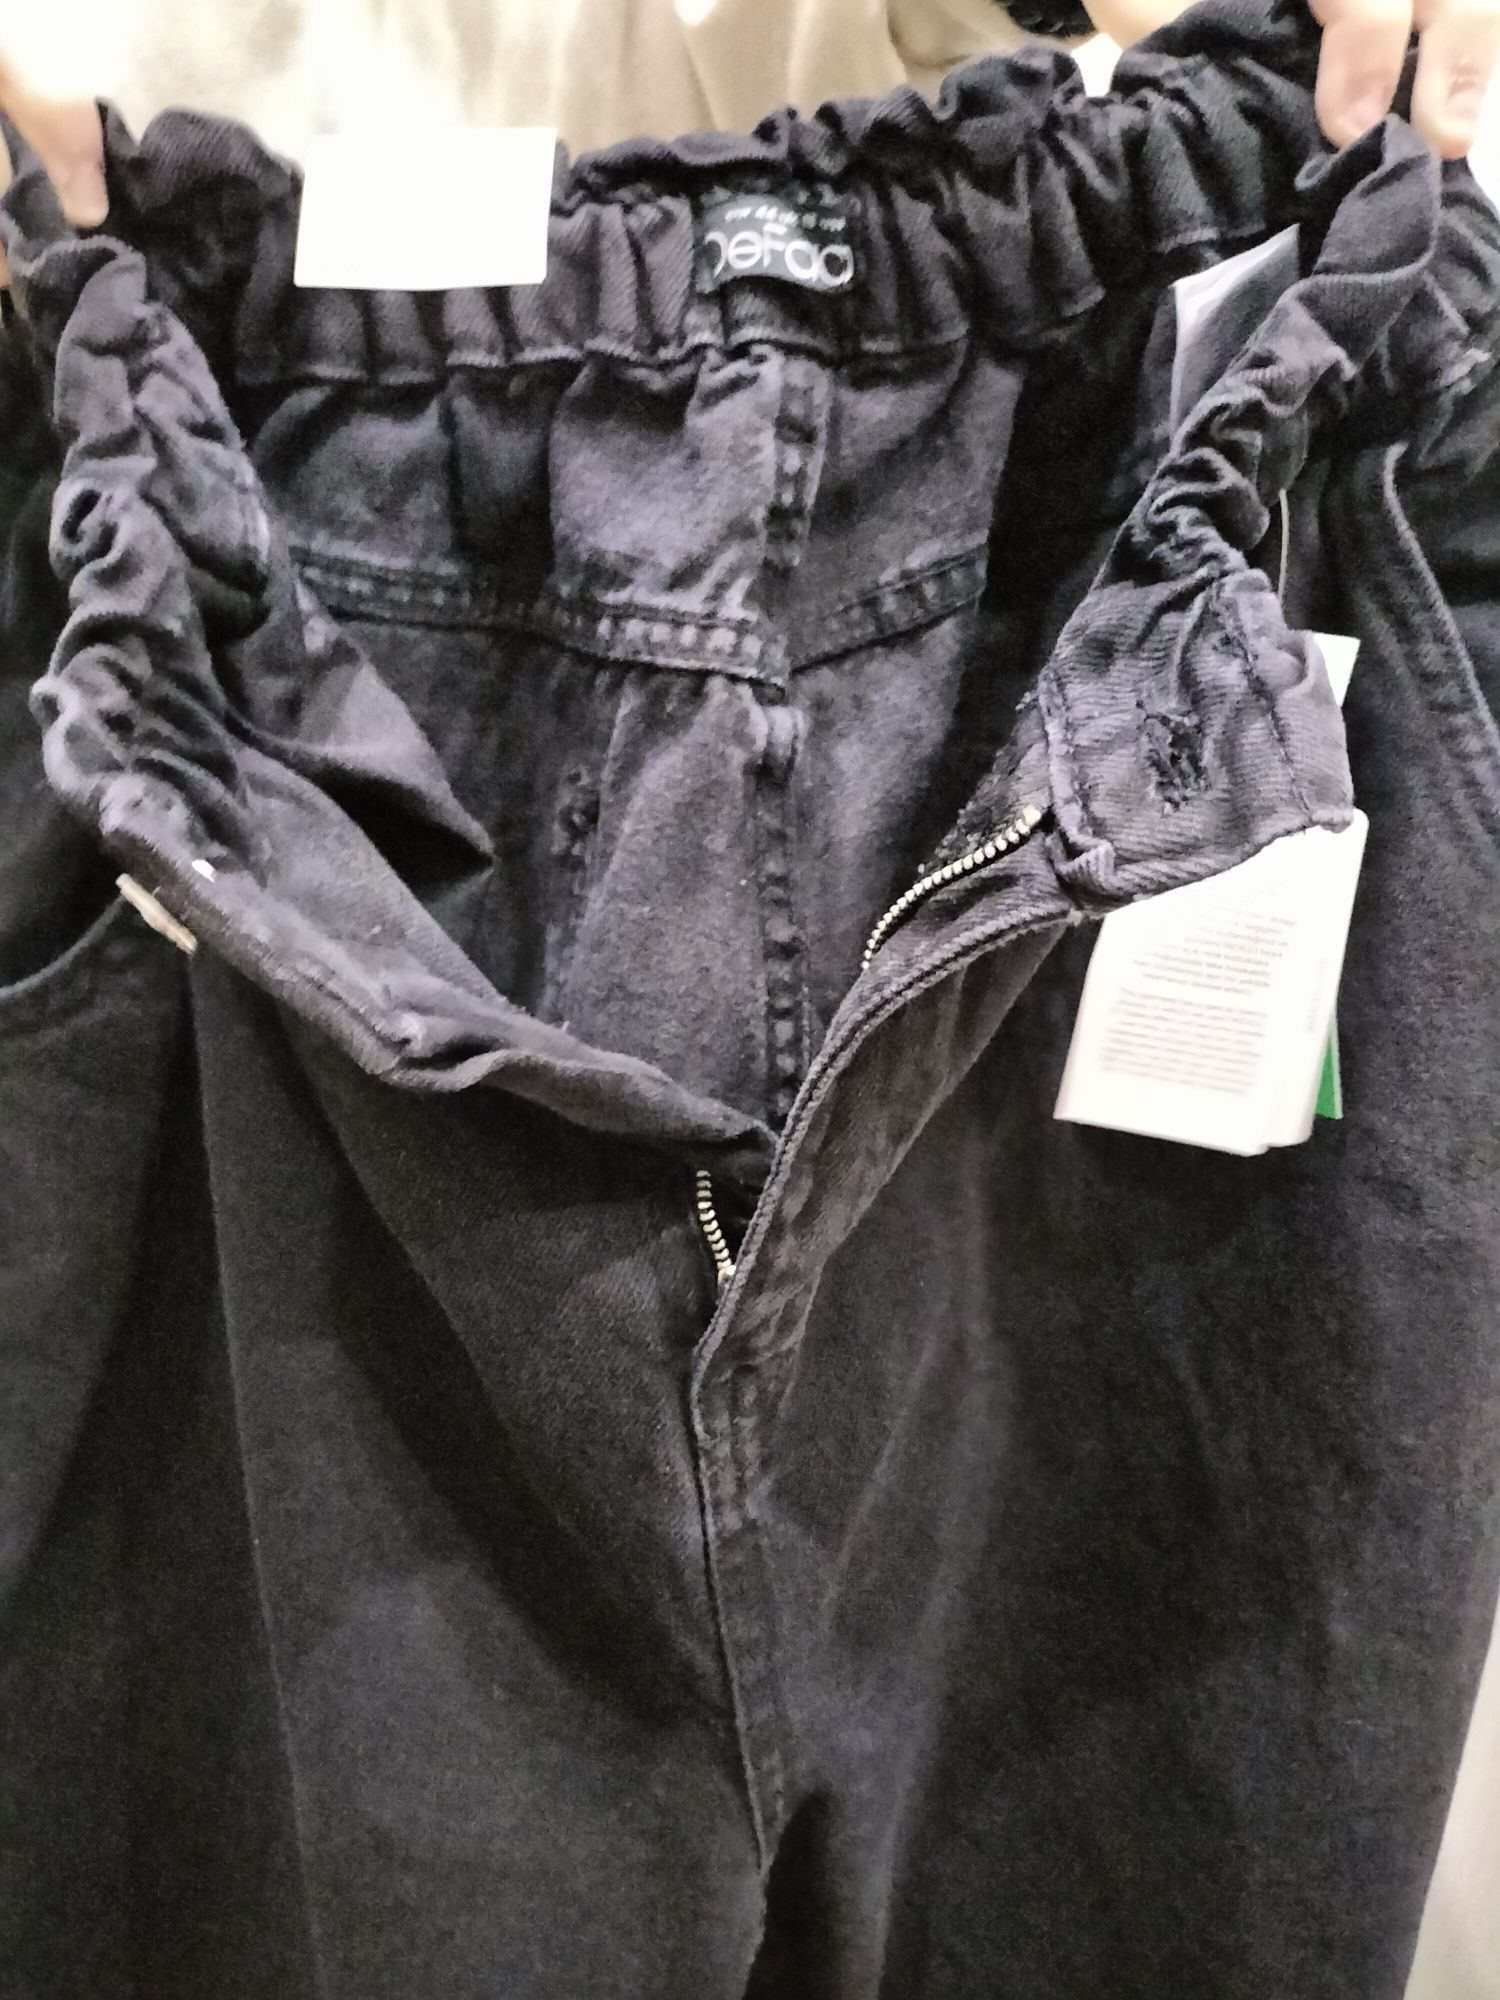 Продам джинсы женские